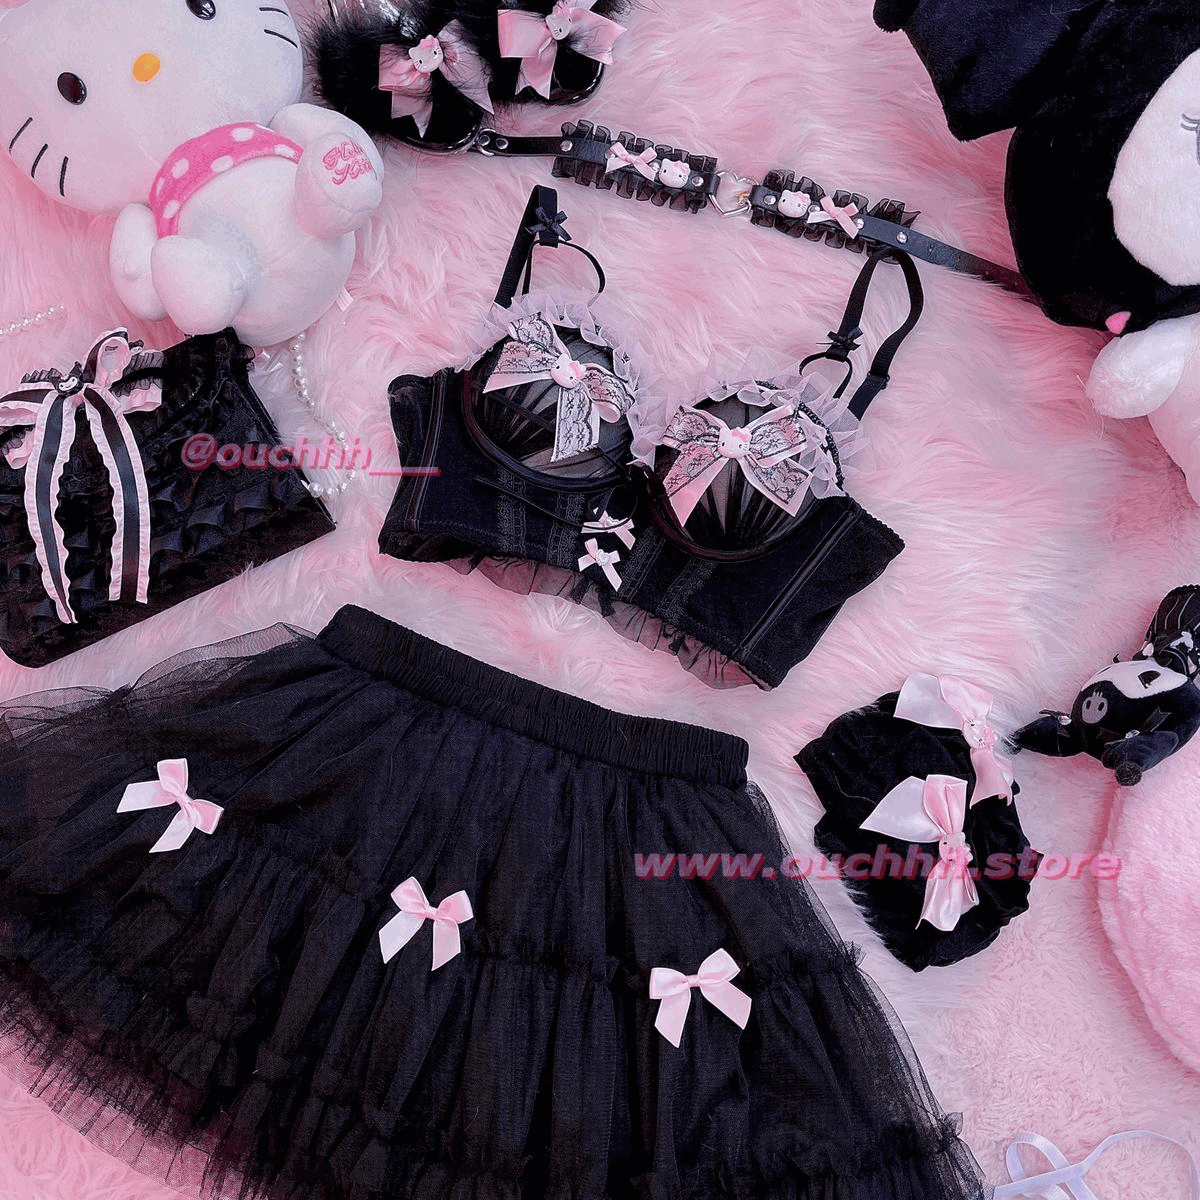 Frilly Fairy Ribbon Tulle Skirt (Black)